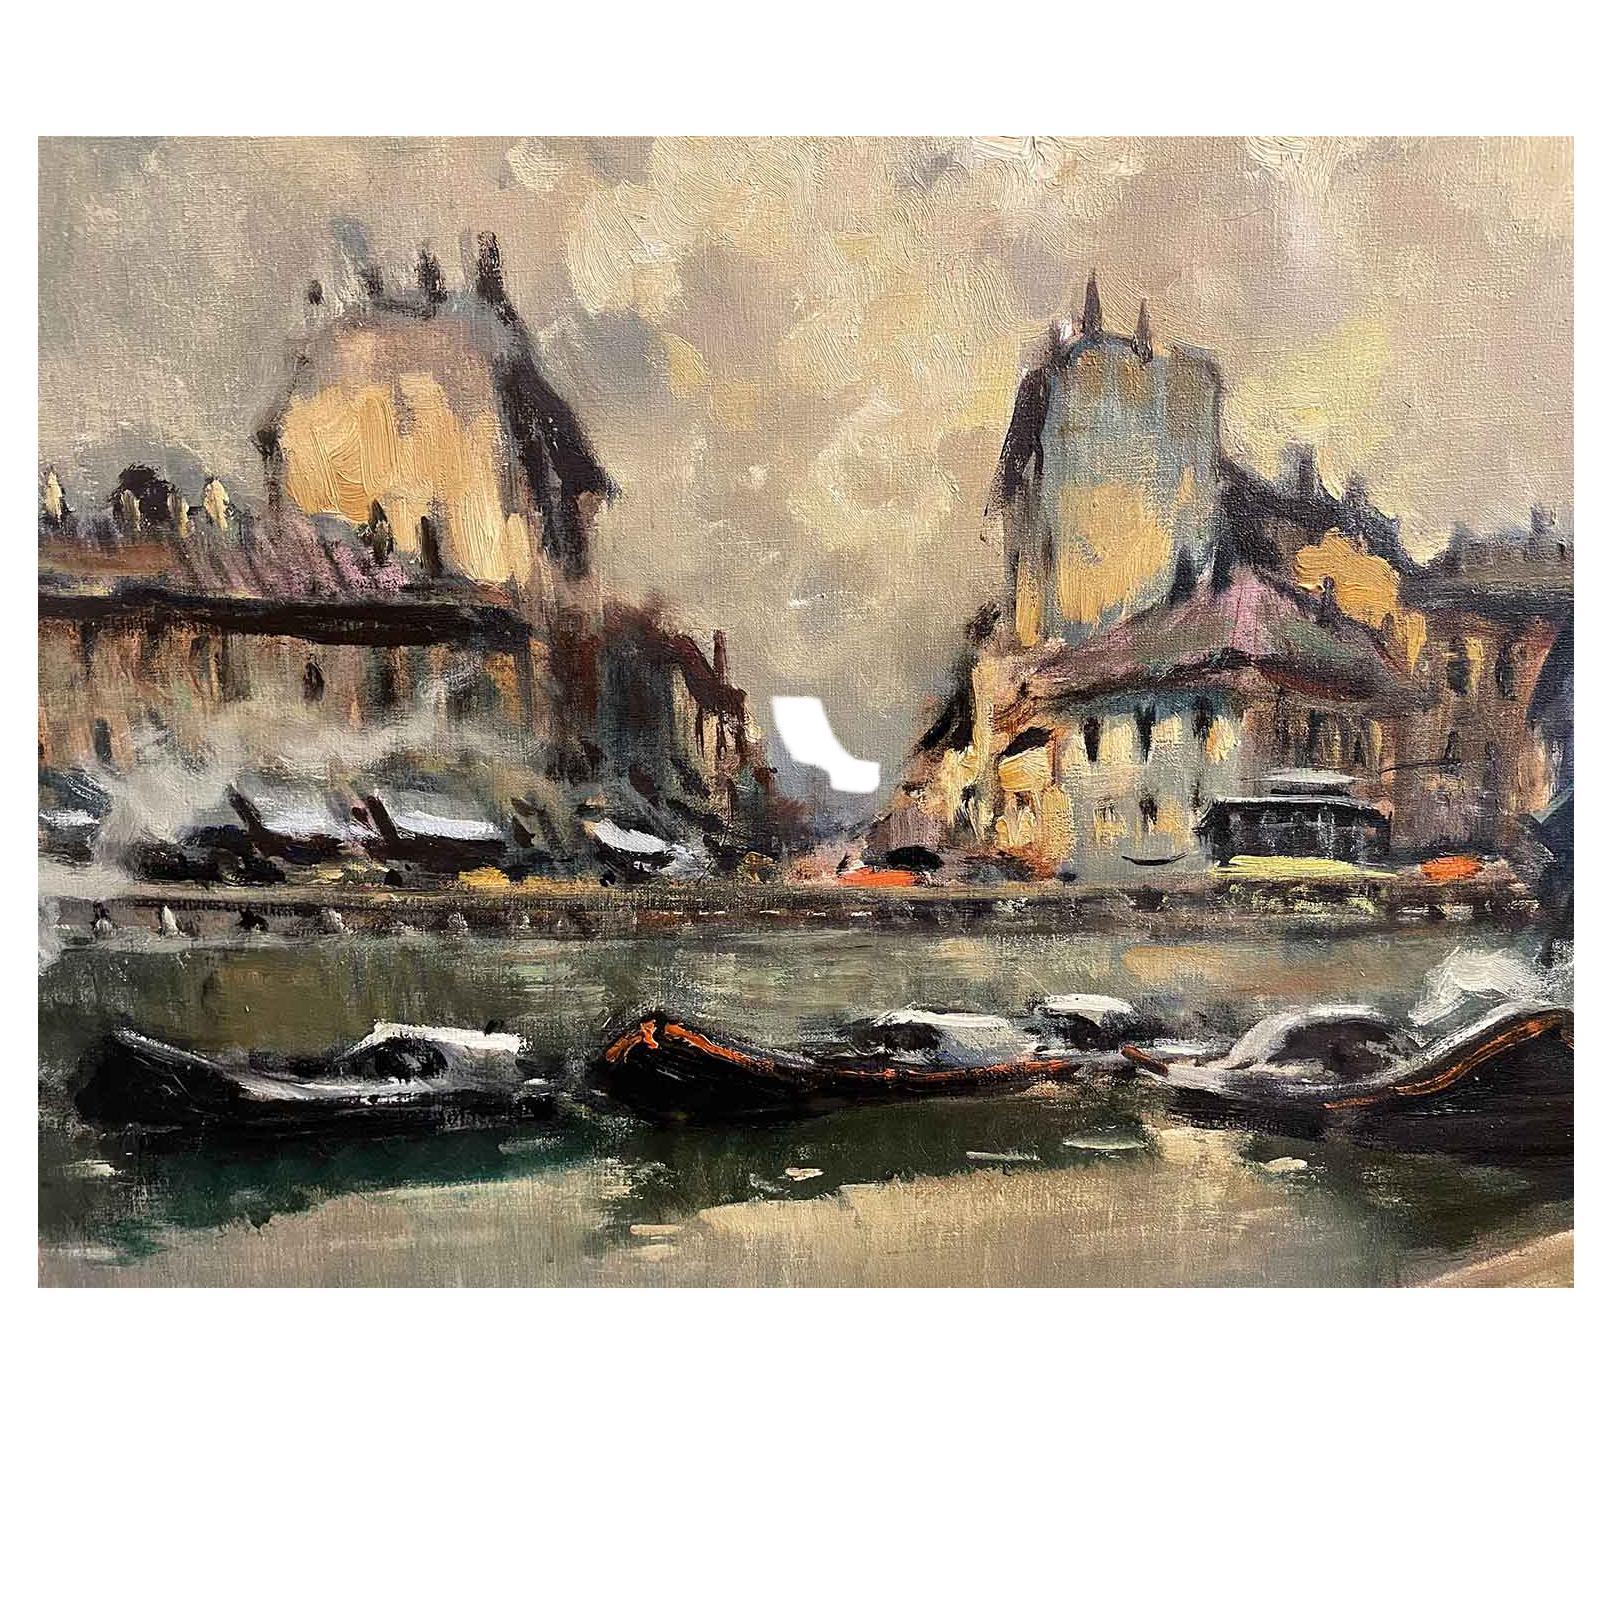 D'Italie, une vue originale colorée de Milan représentant le canal Ticinese Darsena Navigli avec des bateaux et des bâtiments, une peinture à l'huile sur toile signée en bas à droite C.Castelfranchi Milano par le peintre italien Cirano